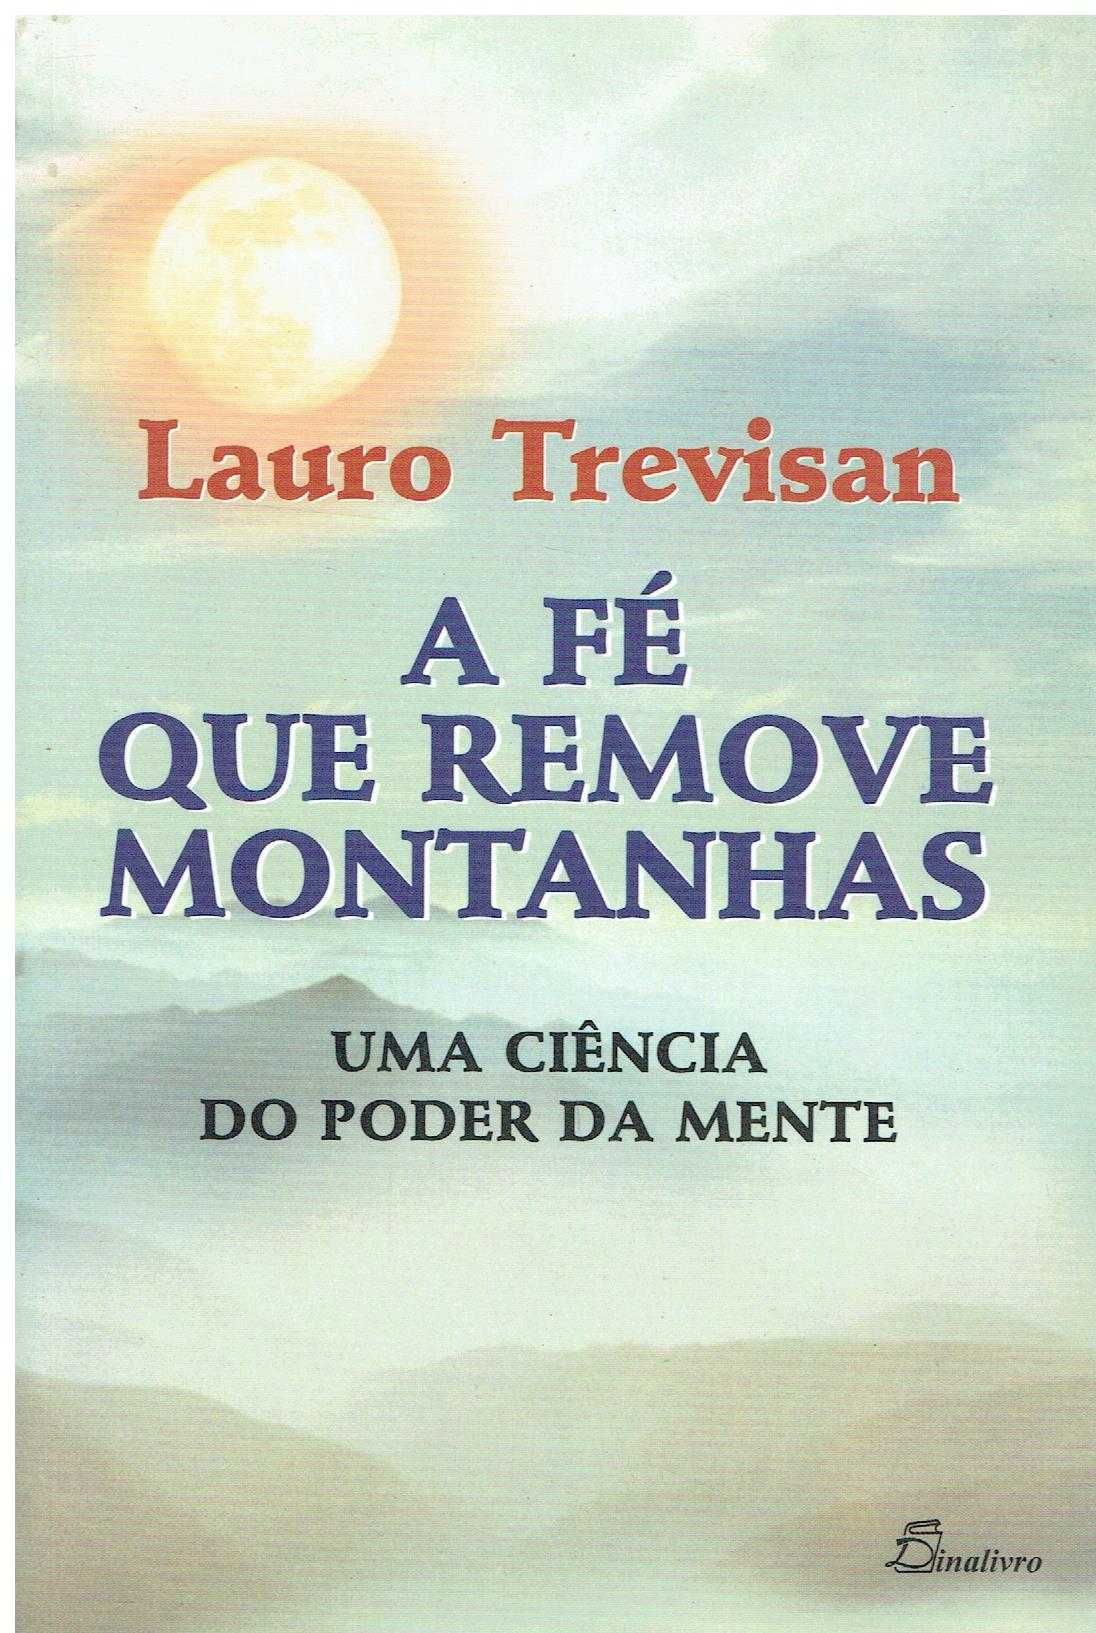 9262

A Fé Que Remove Montanhas
de Lauro Trevisan